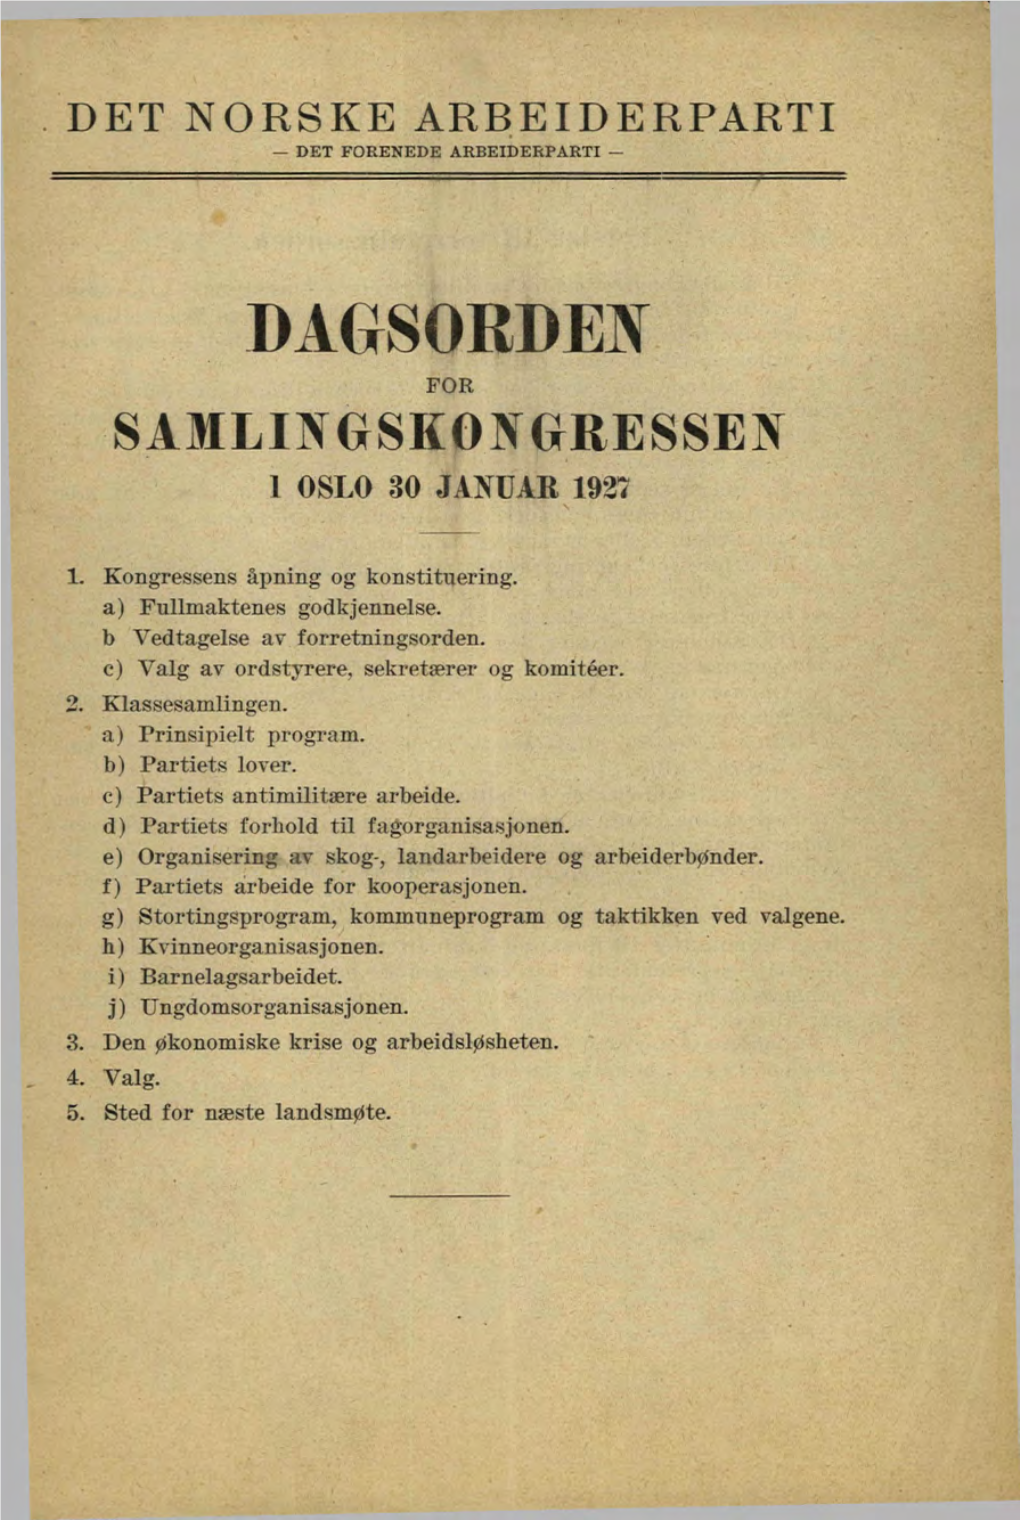 Dagsordejv for Samlingskon(^Ressen 1 Oslo 30 Januar 1937